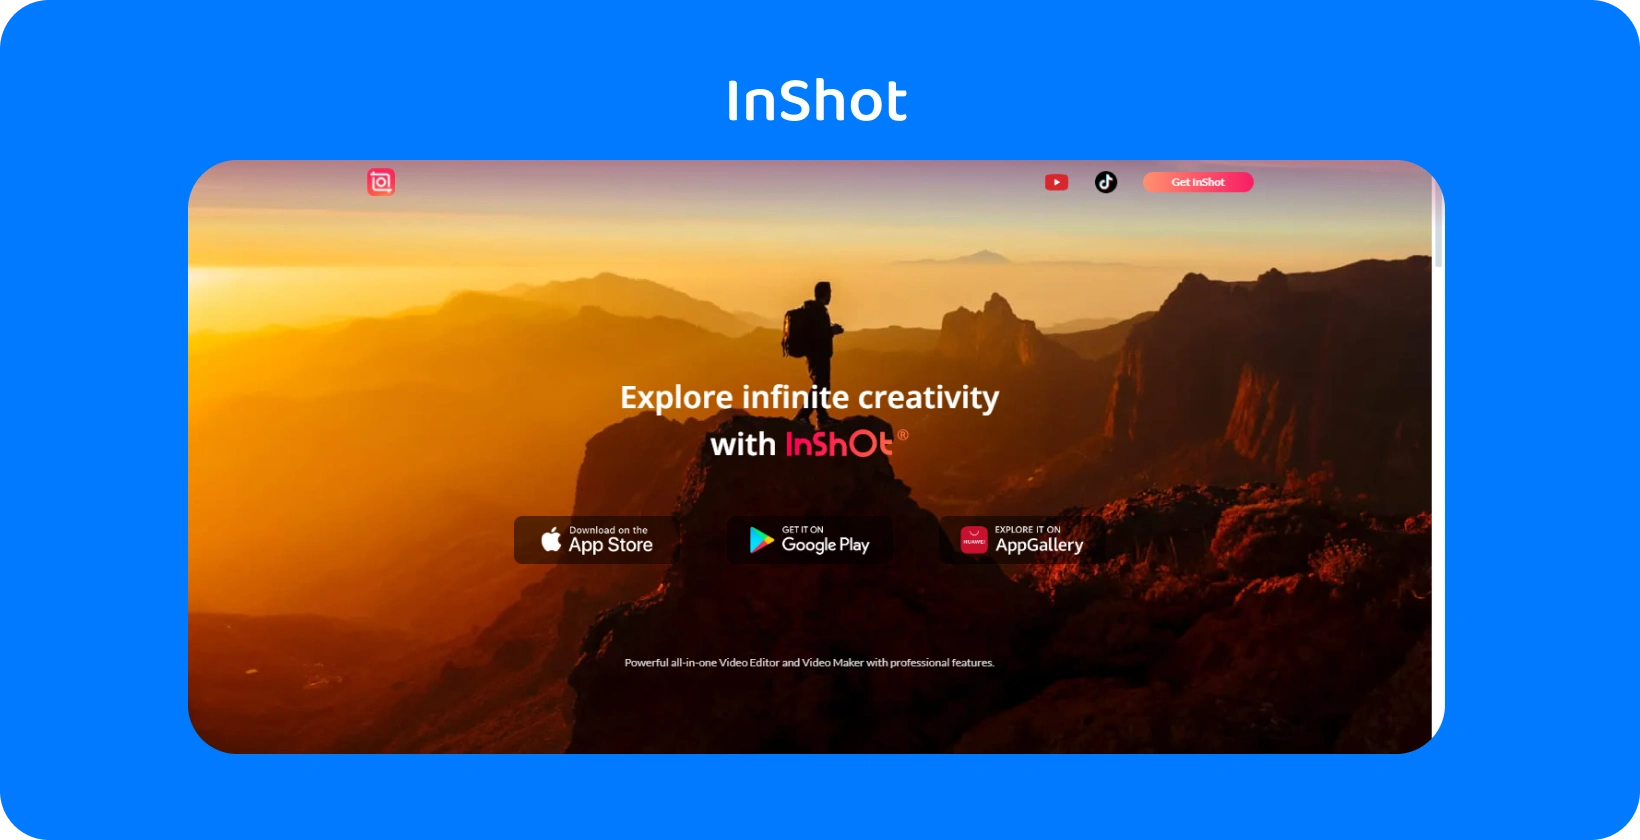 L'annuncio dell'app InShot raffigura un escursionista al tramonto, che simboleggia la promessa dell'app di esplorare la creatività infinita nell'editing video.
